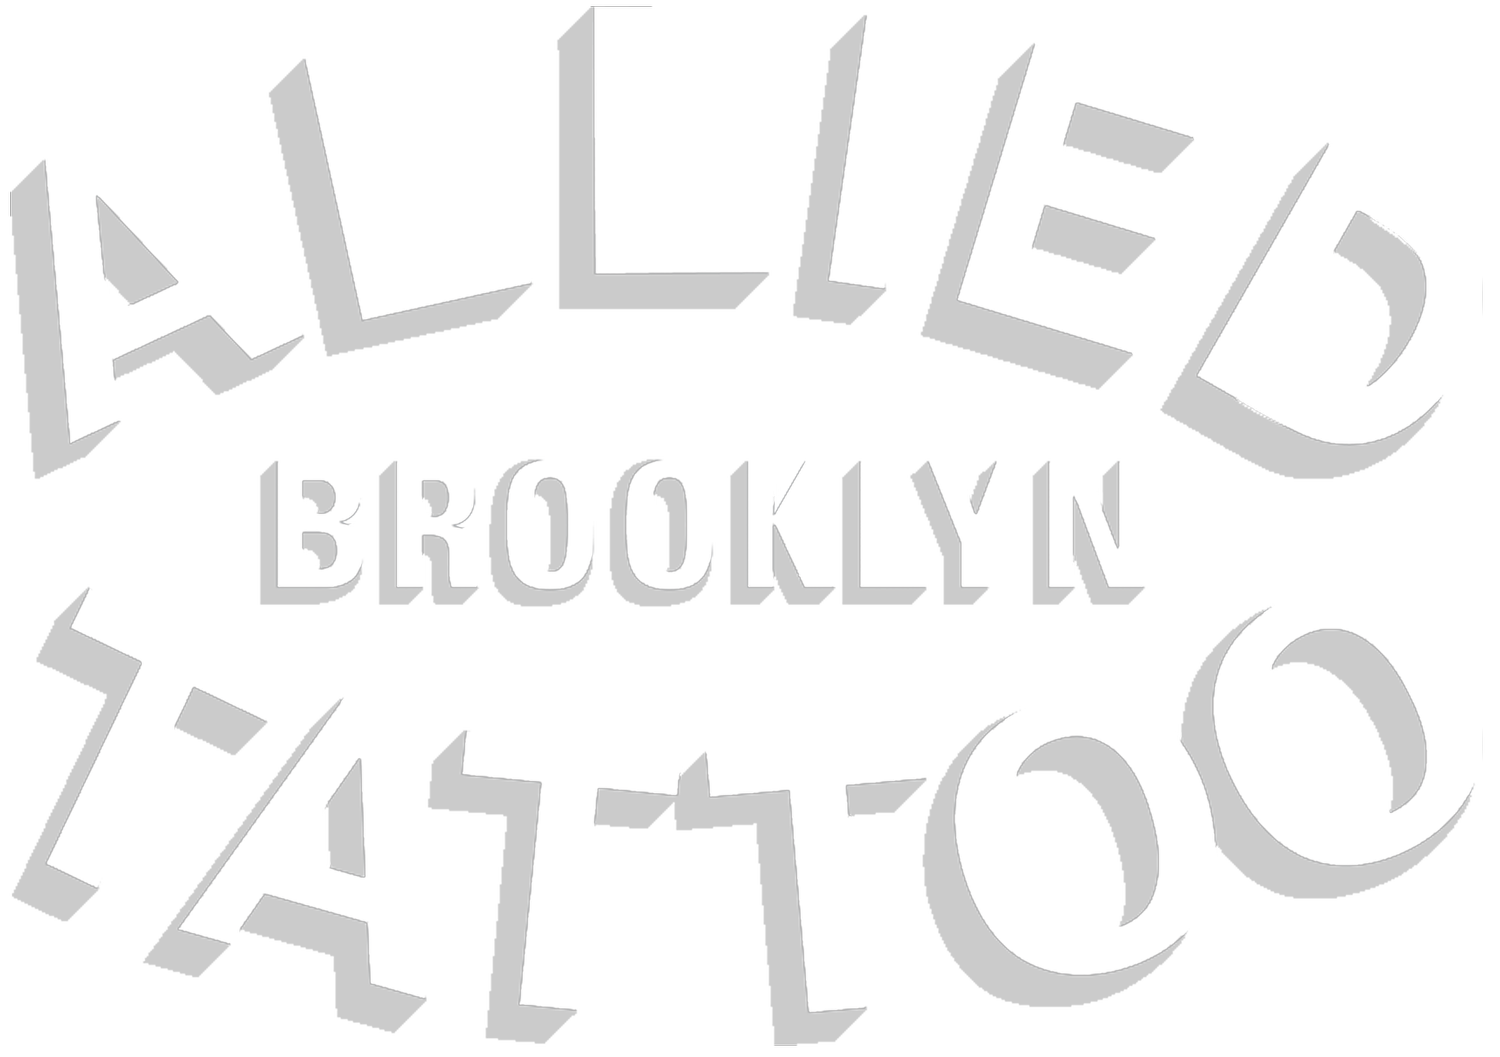 Allied Tattoo